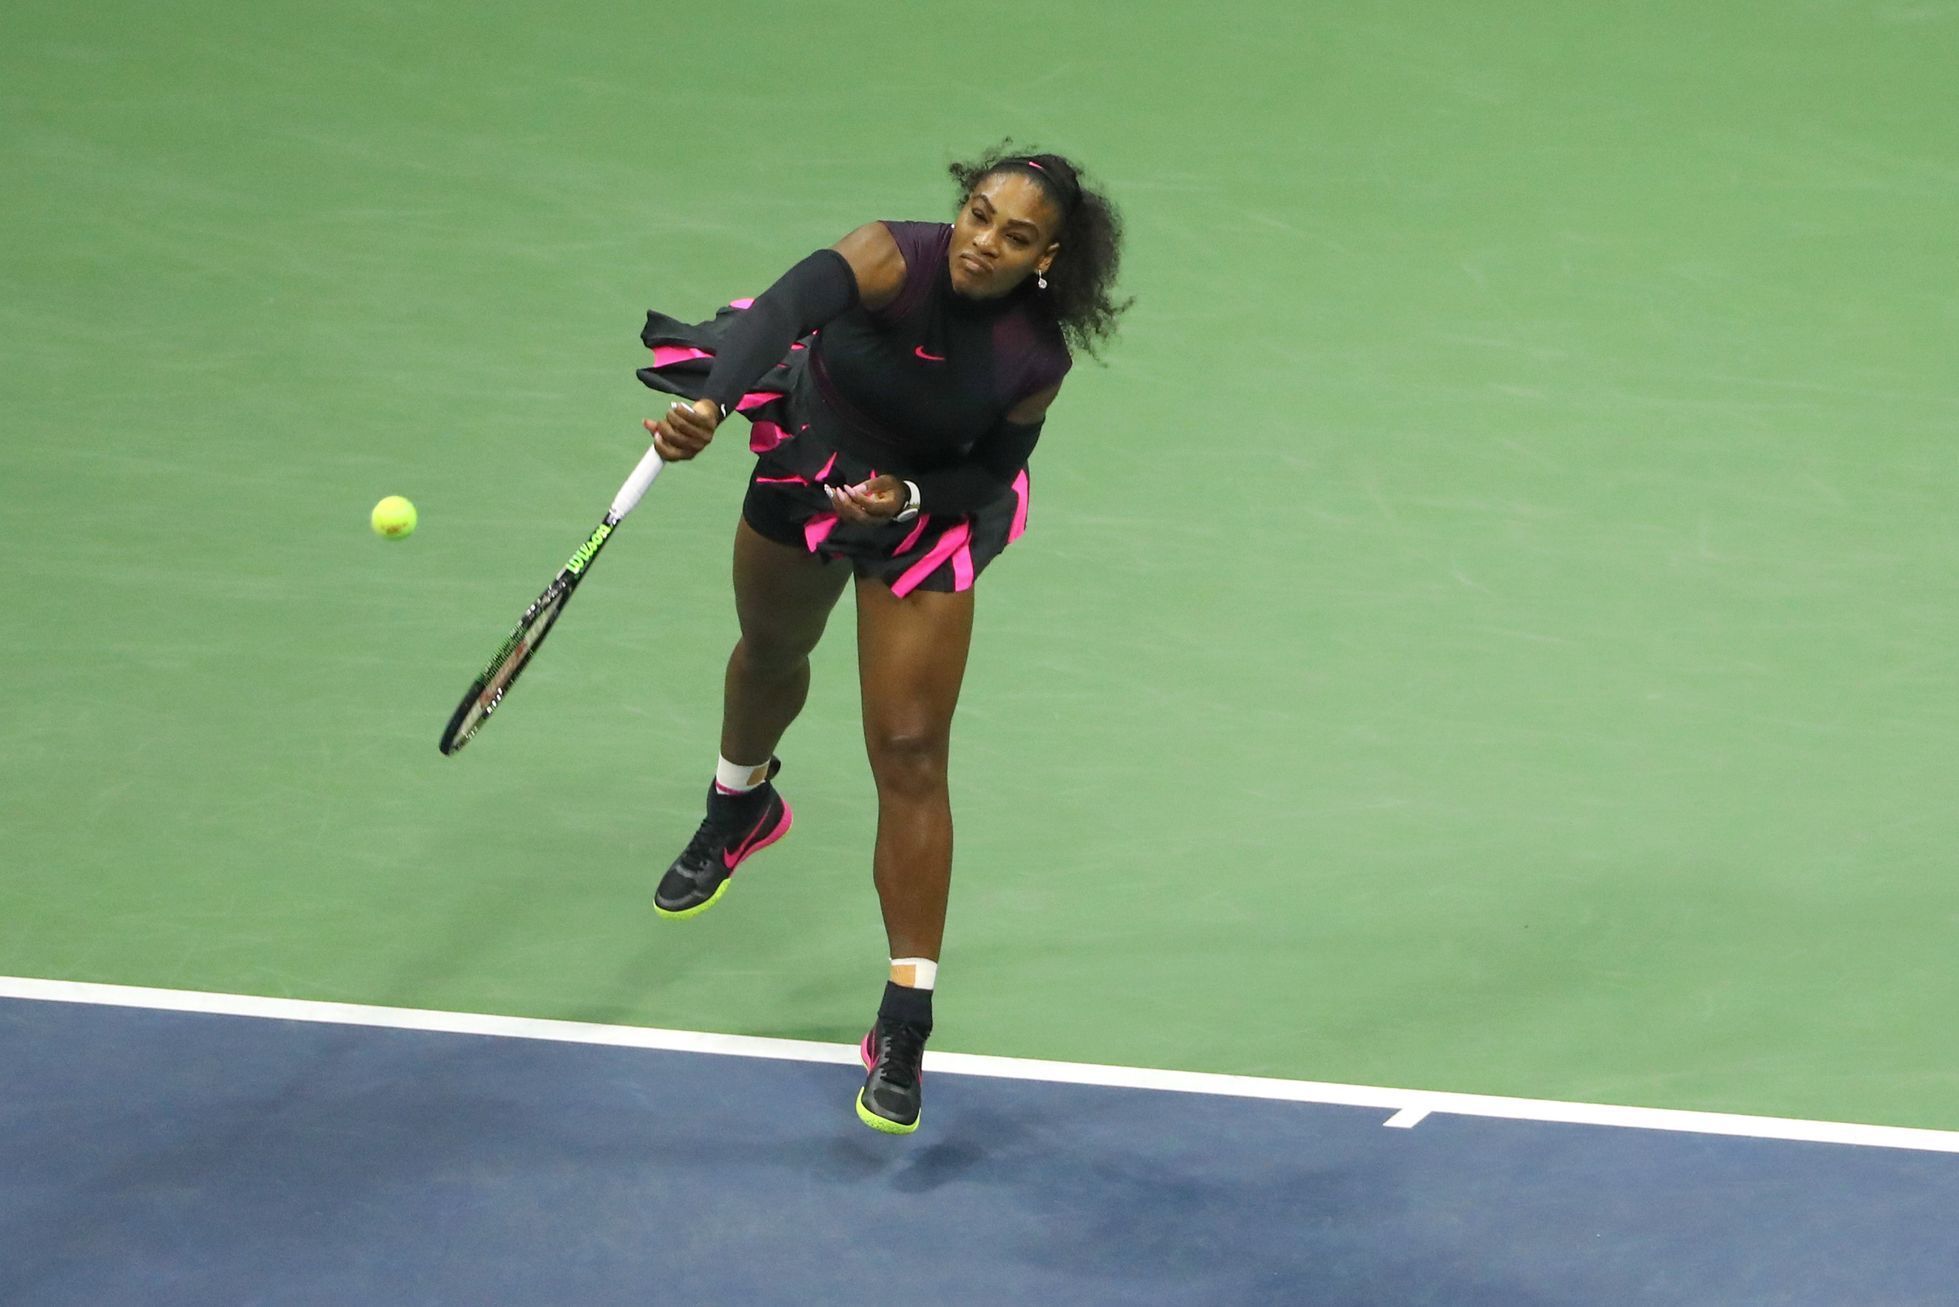 Semifinále US Open: Plíšková - S. Williamsová